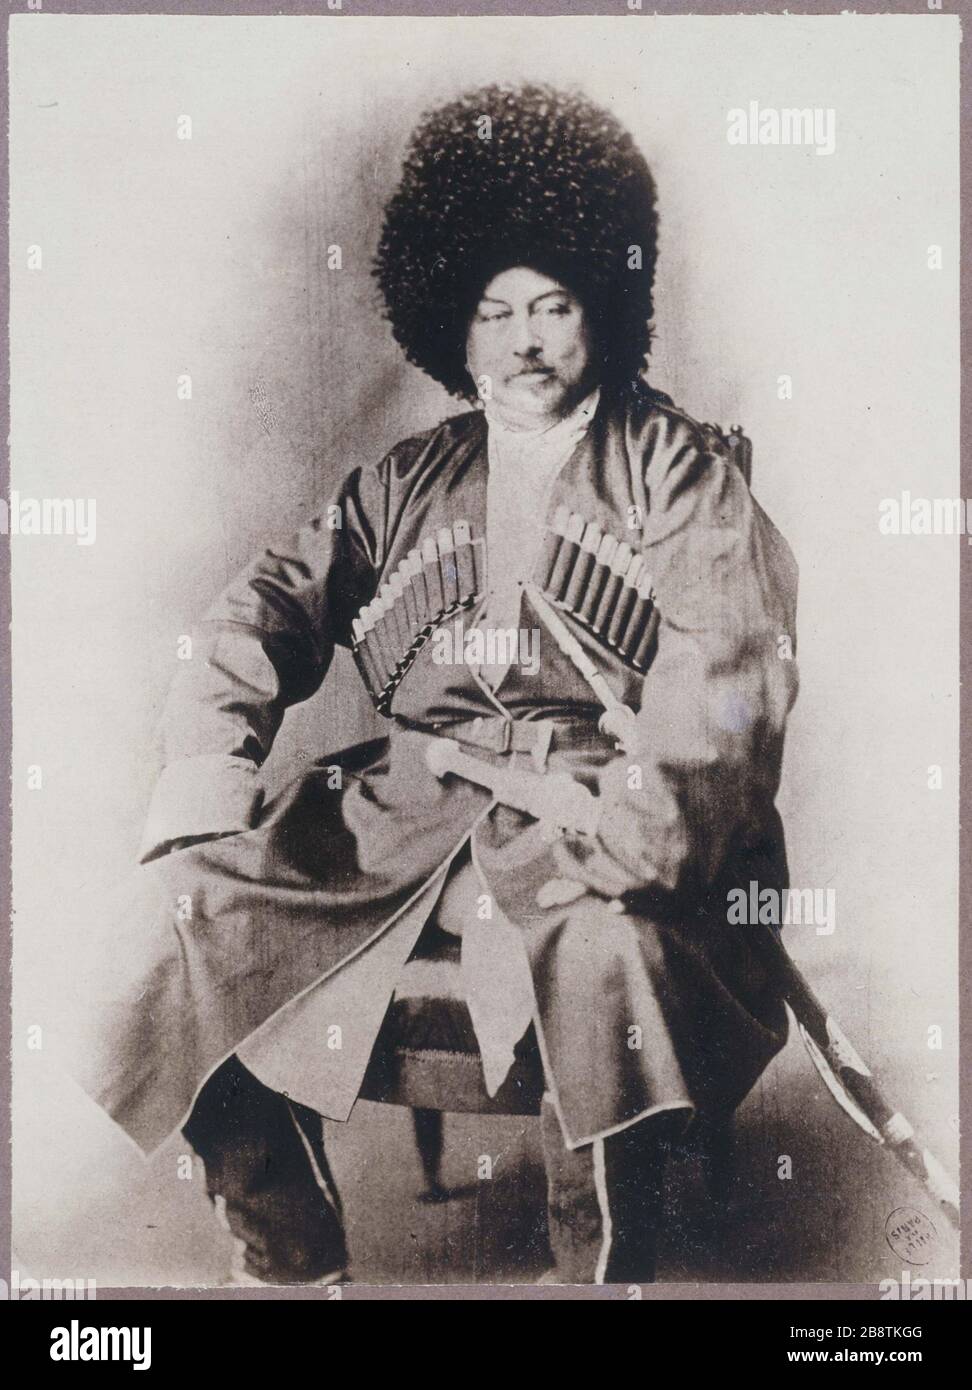 FRANCE - ALEXANDRE DUMAS Alexandre Dumas en costume caucasien. Photographie anonyme. Paris, musée Carnavalet. Stock Photo